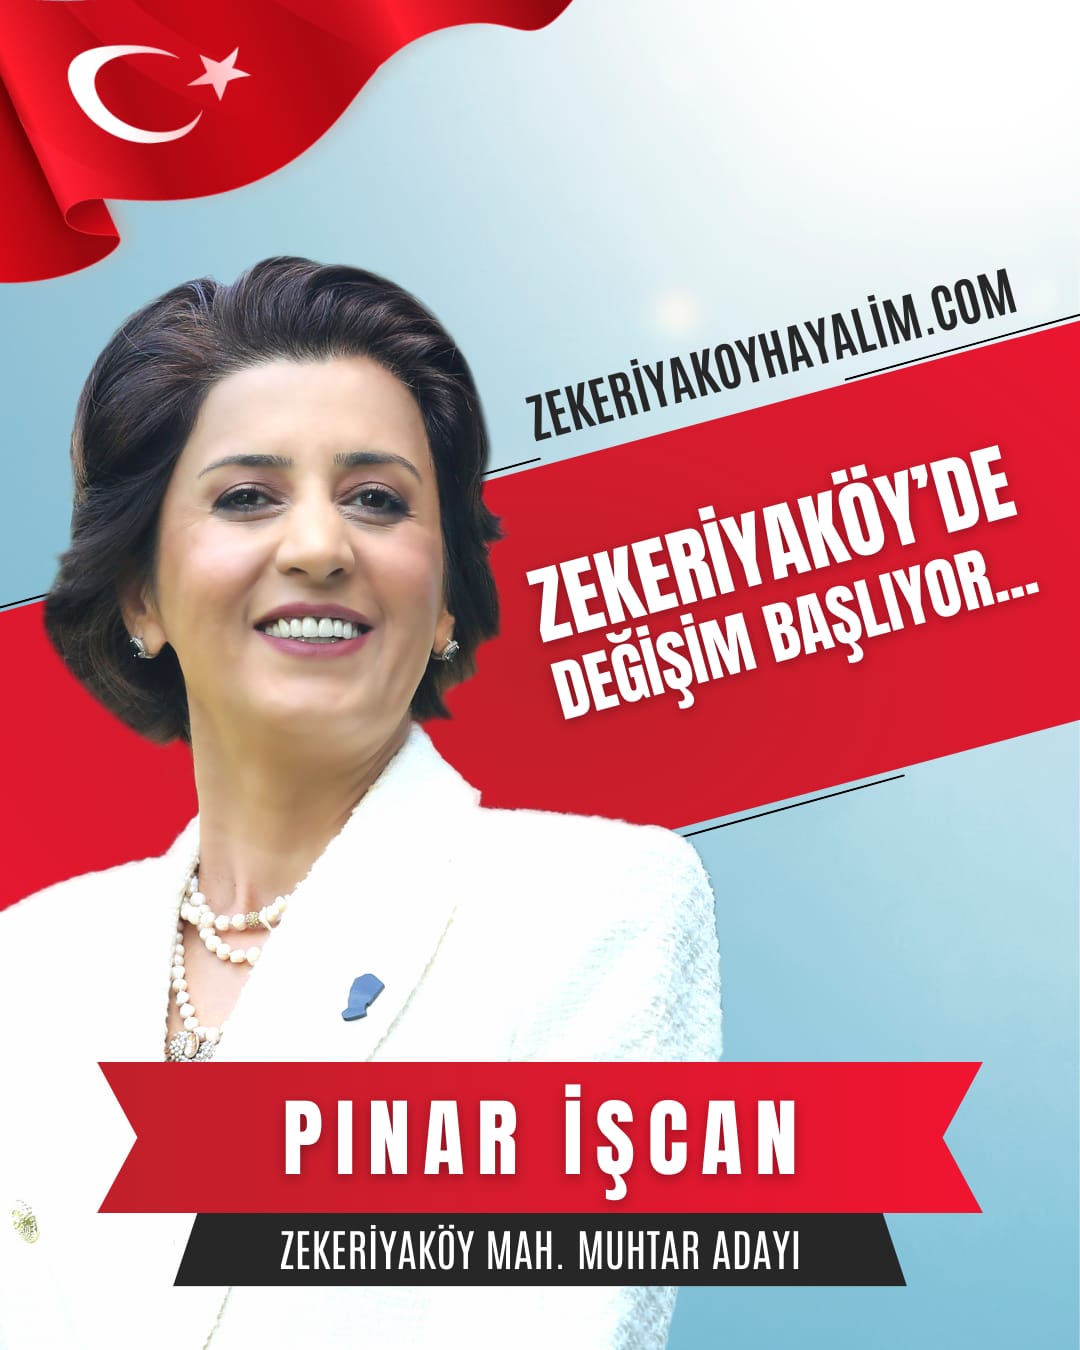 Pinar Iscan